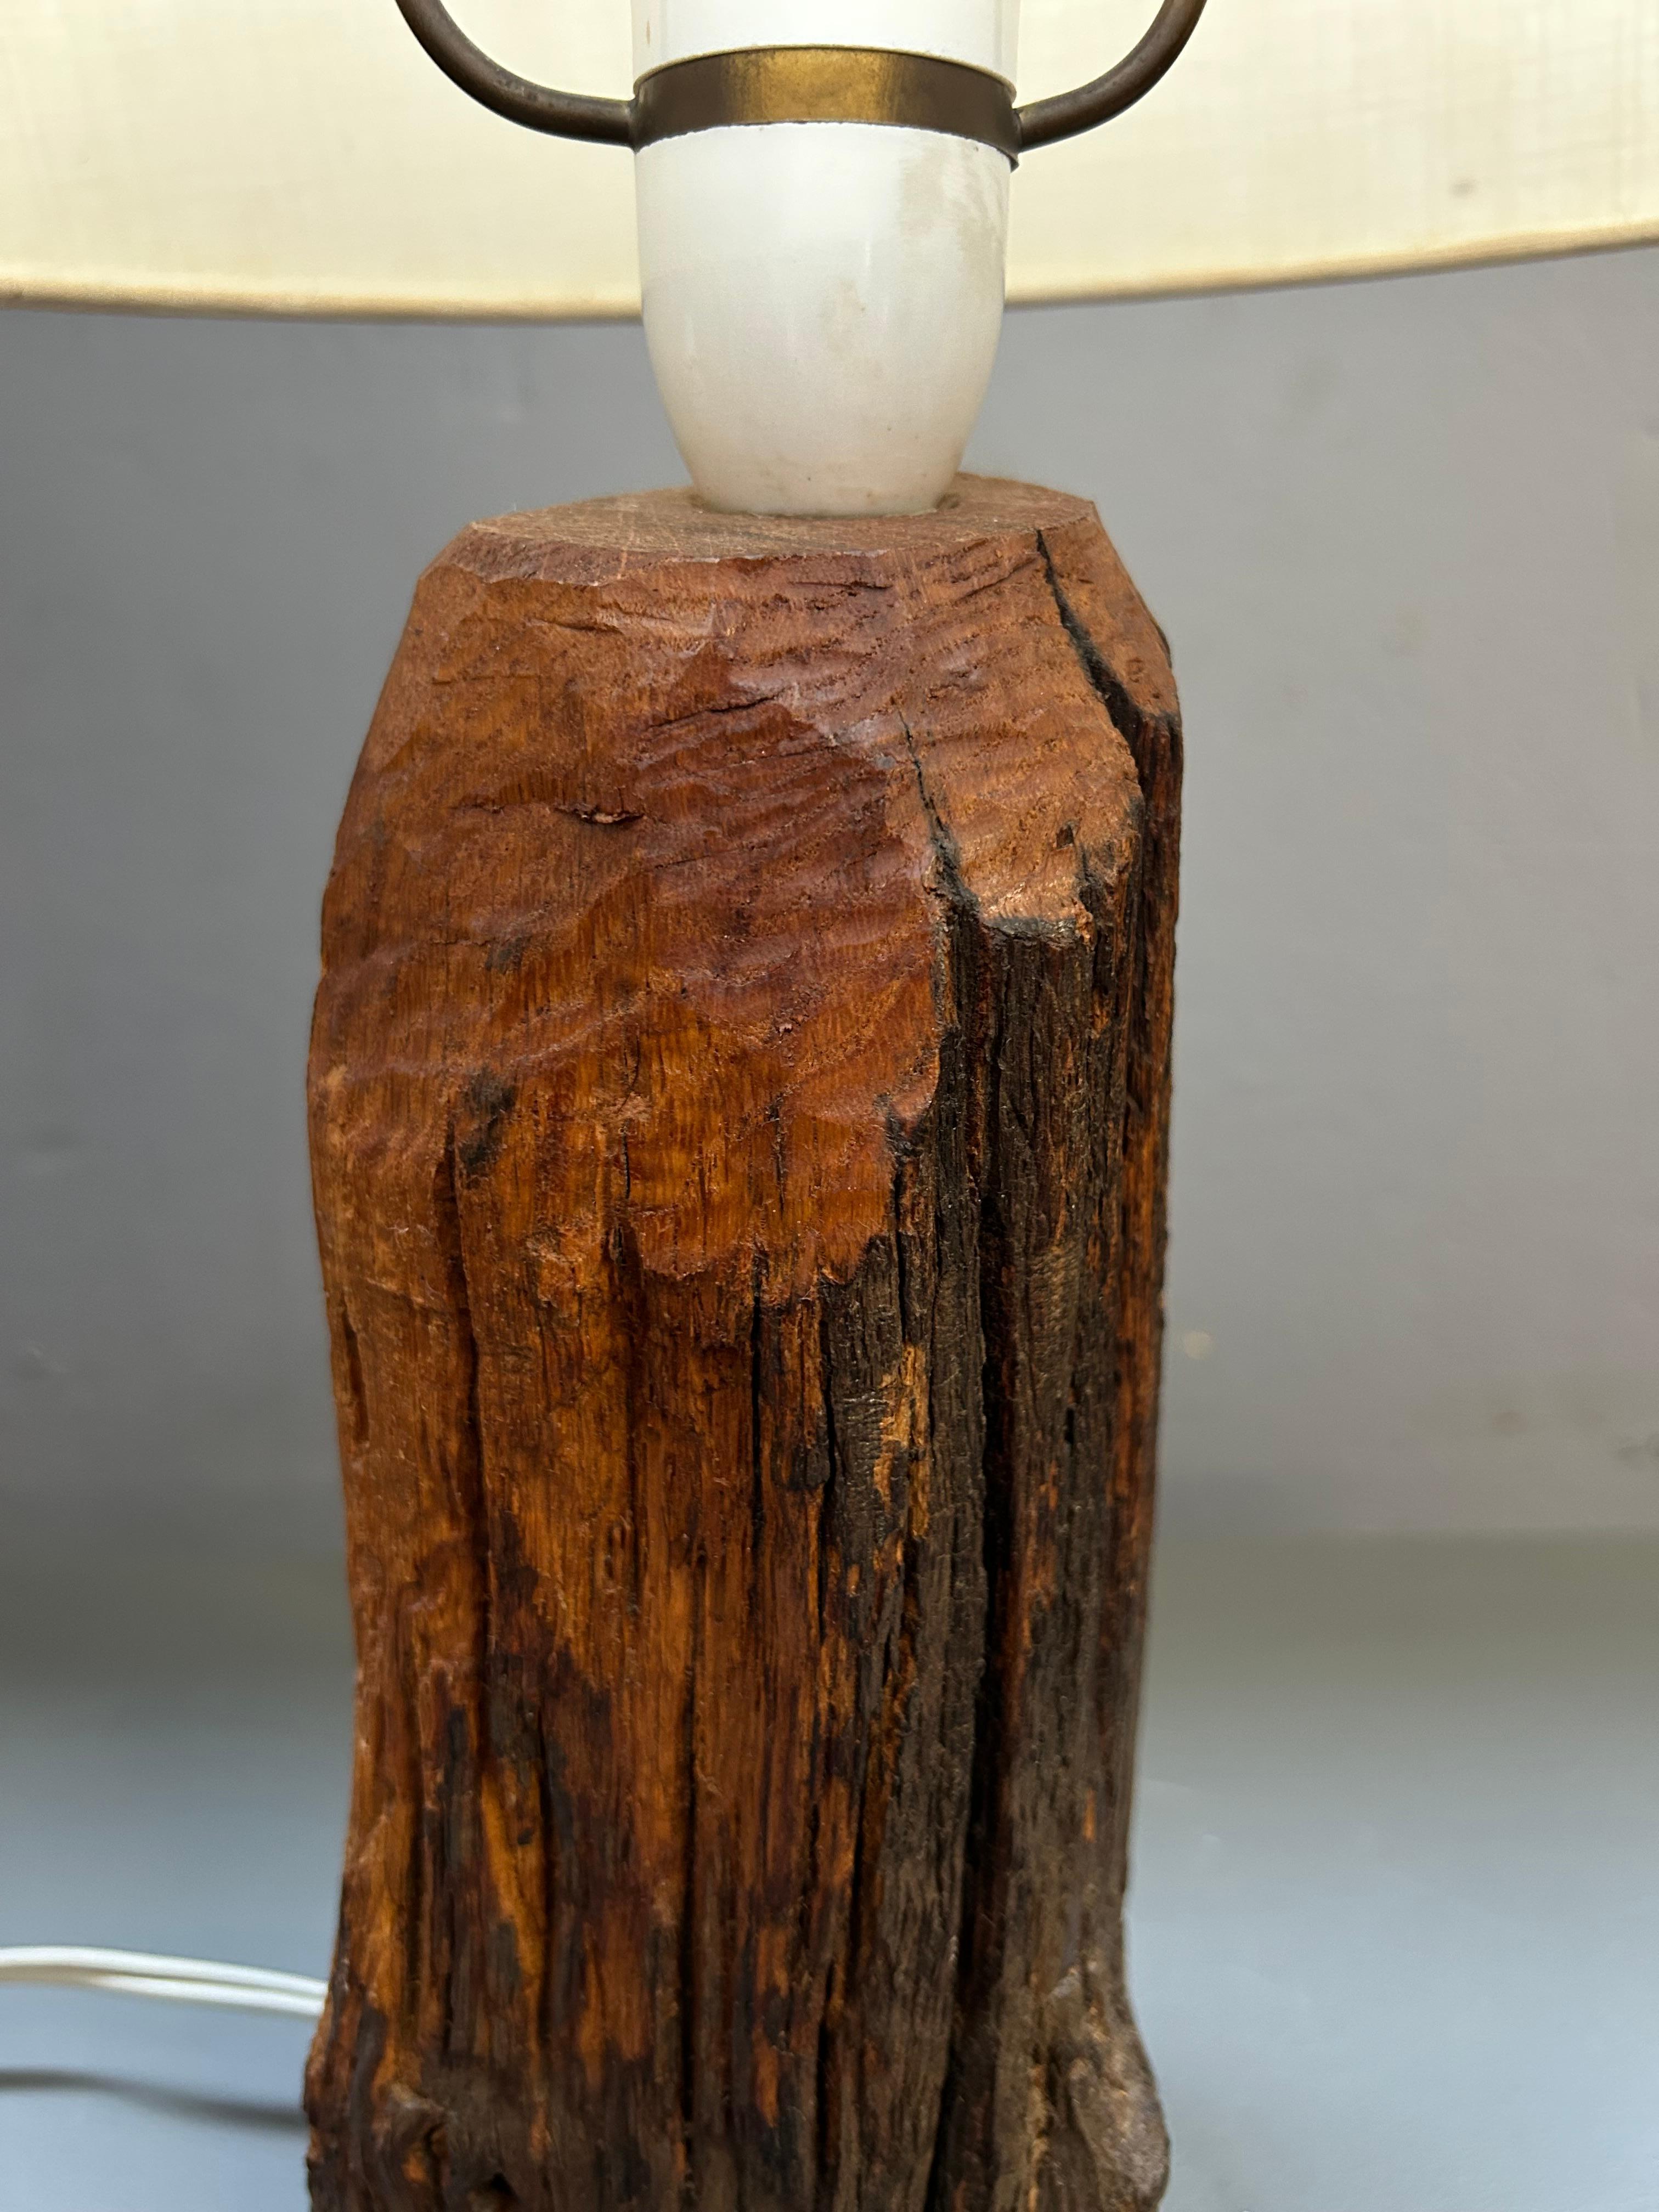 Rare et unique lampe de table en bois brutaliste organique fabriquée en Suède dans les années 1970 par un artisan très compétent.

La lampe est en bon état d'origine avec une belle patine naturelle et la douille et le fil d'origine.

La lampe est